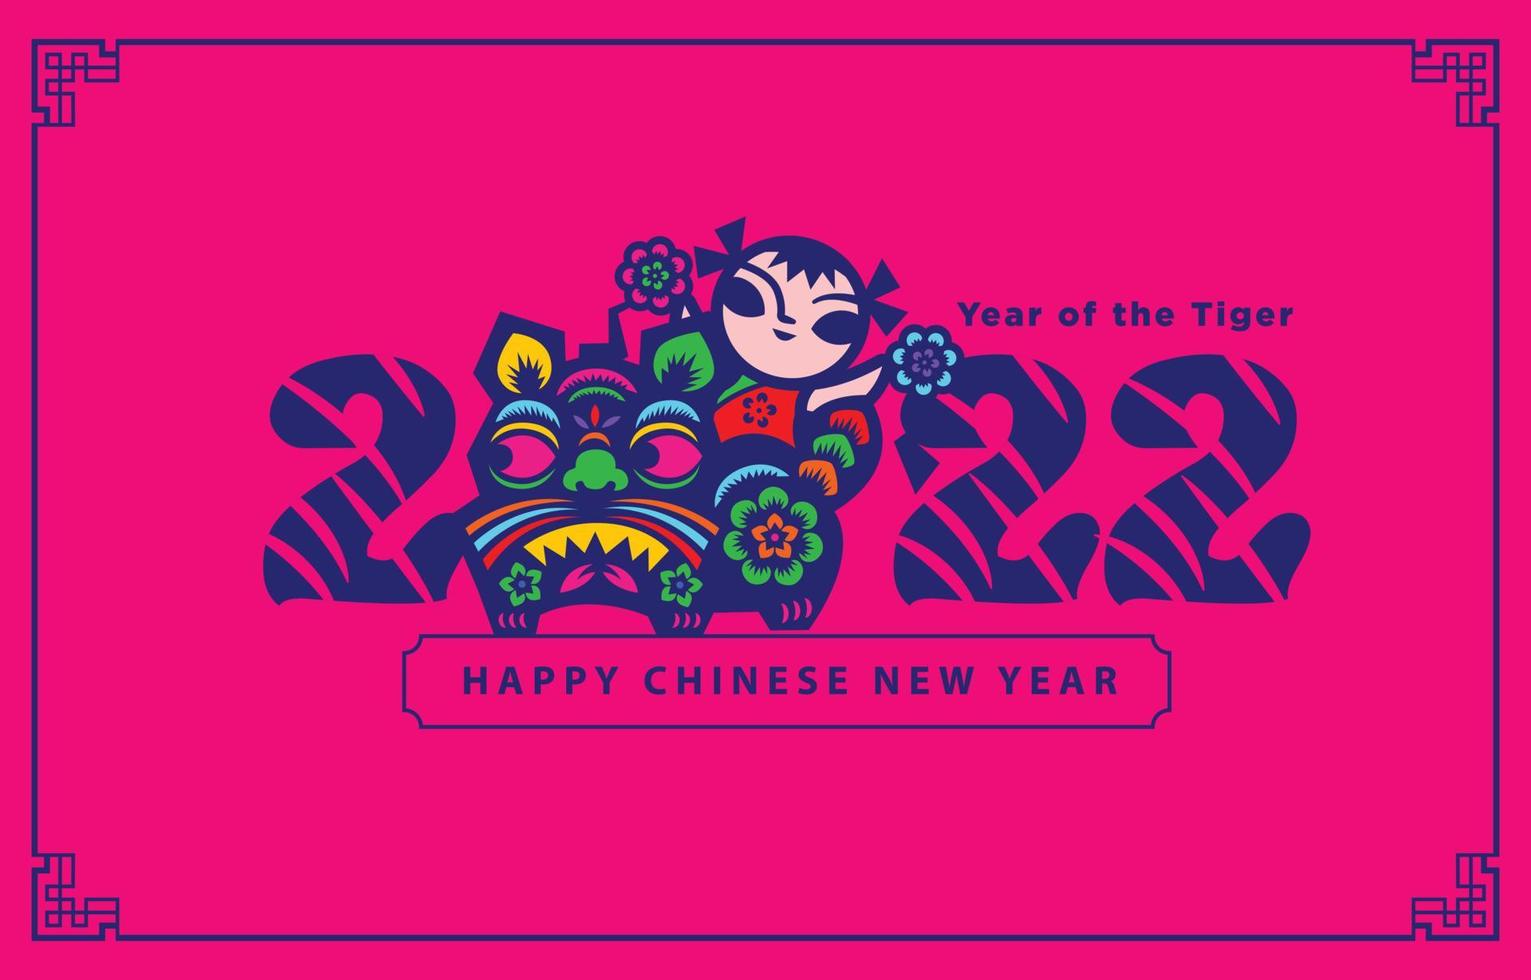 Chinees Nieuwjaar 2022. papier gesneden kunst van tijger symbool en kind met bloem bal op oosterse roze achtergrond. vector